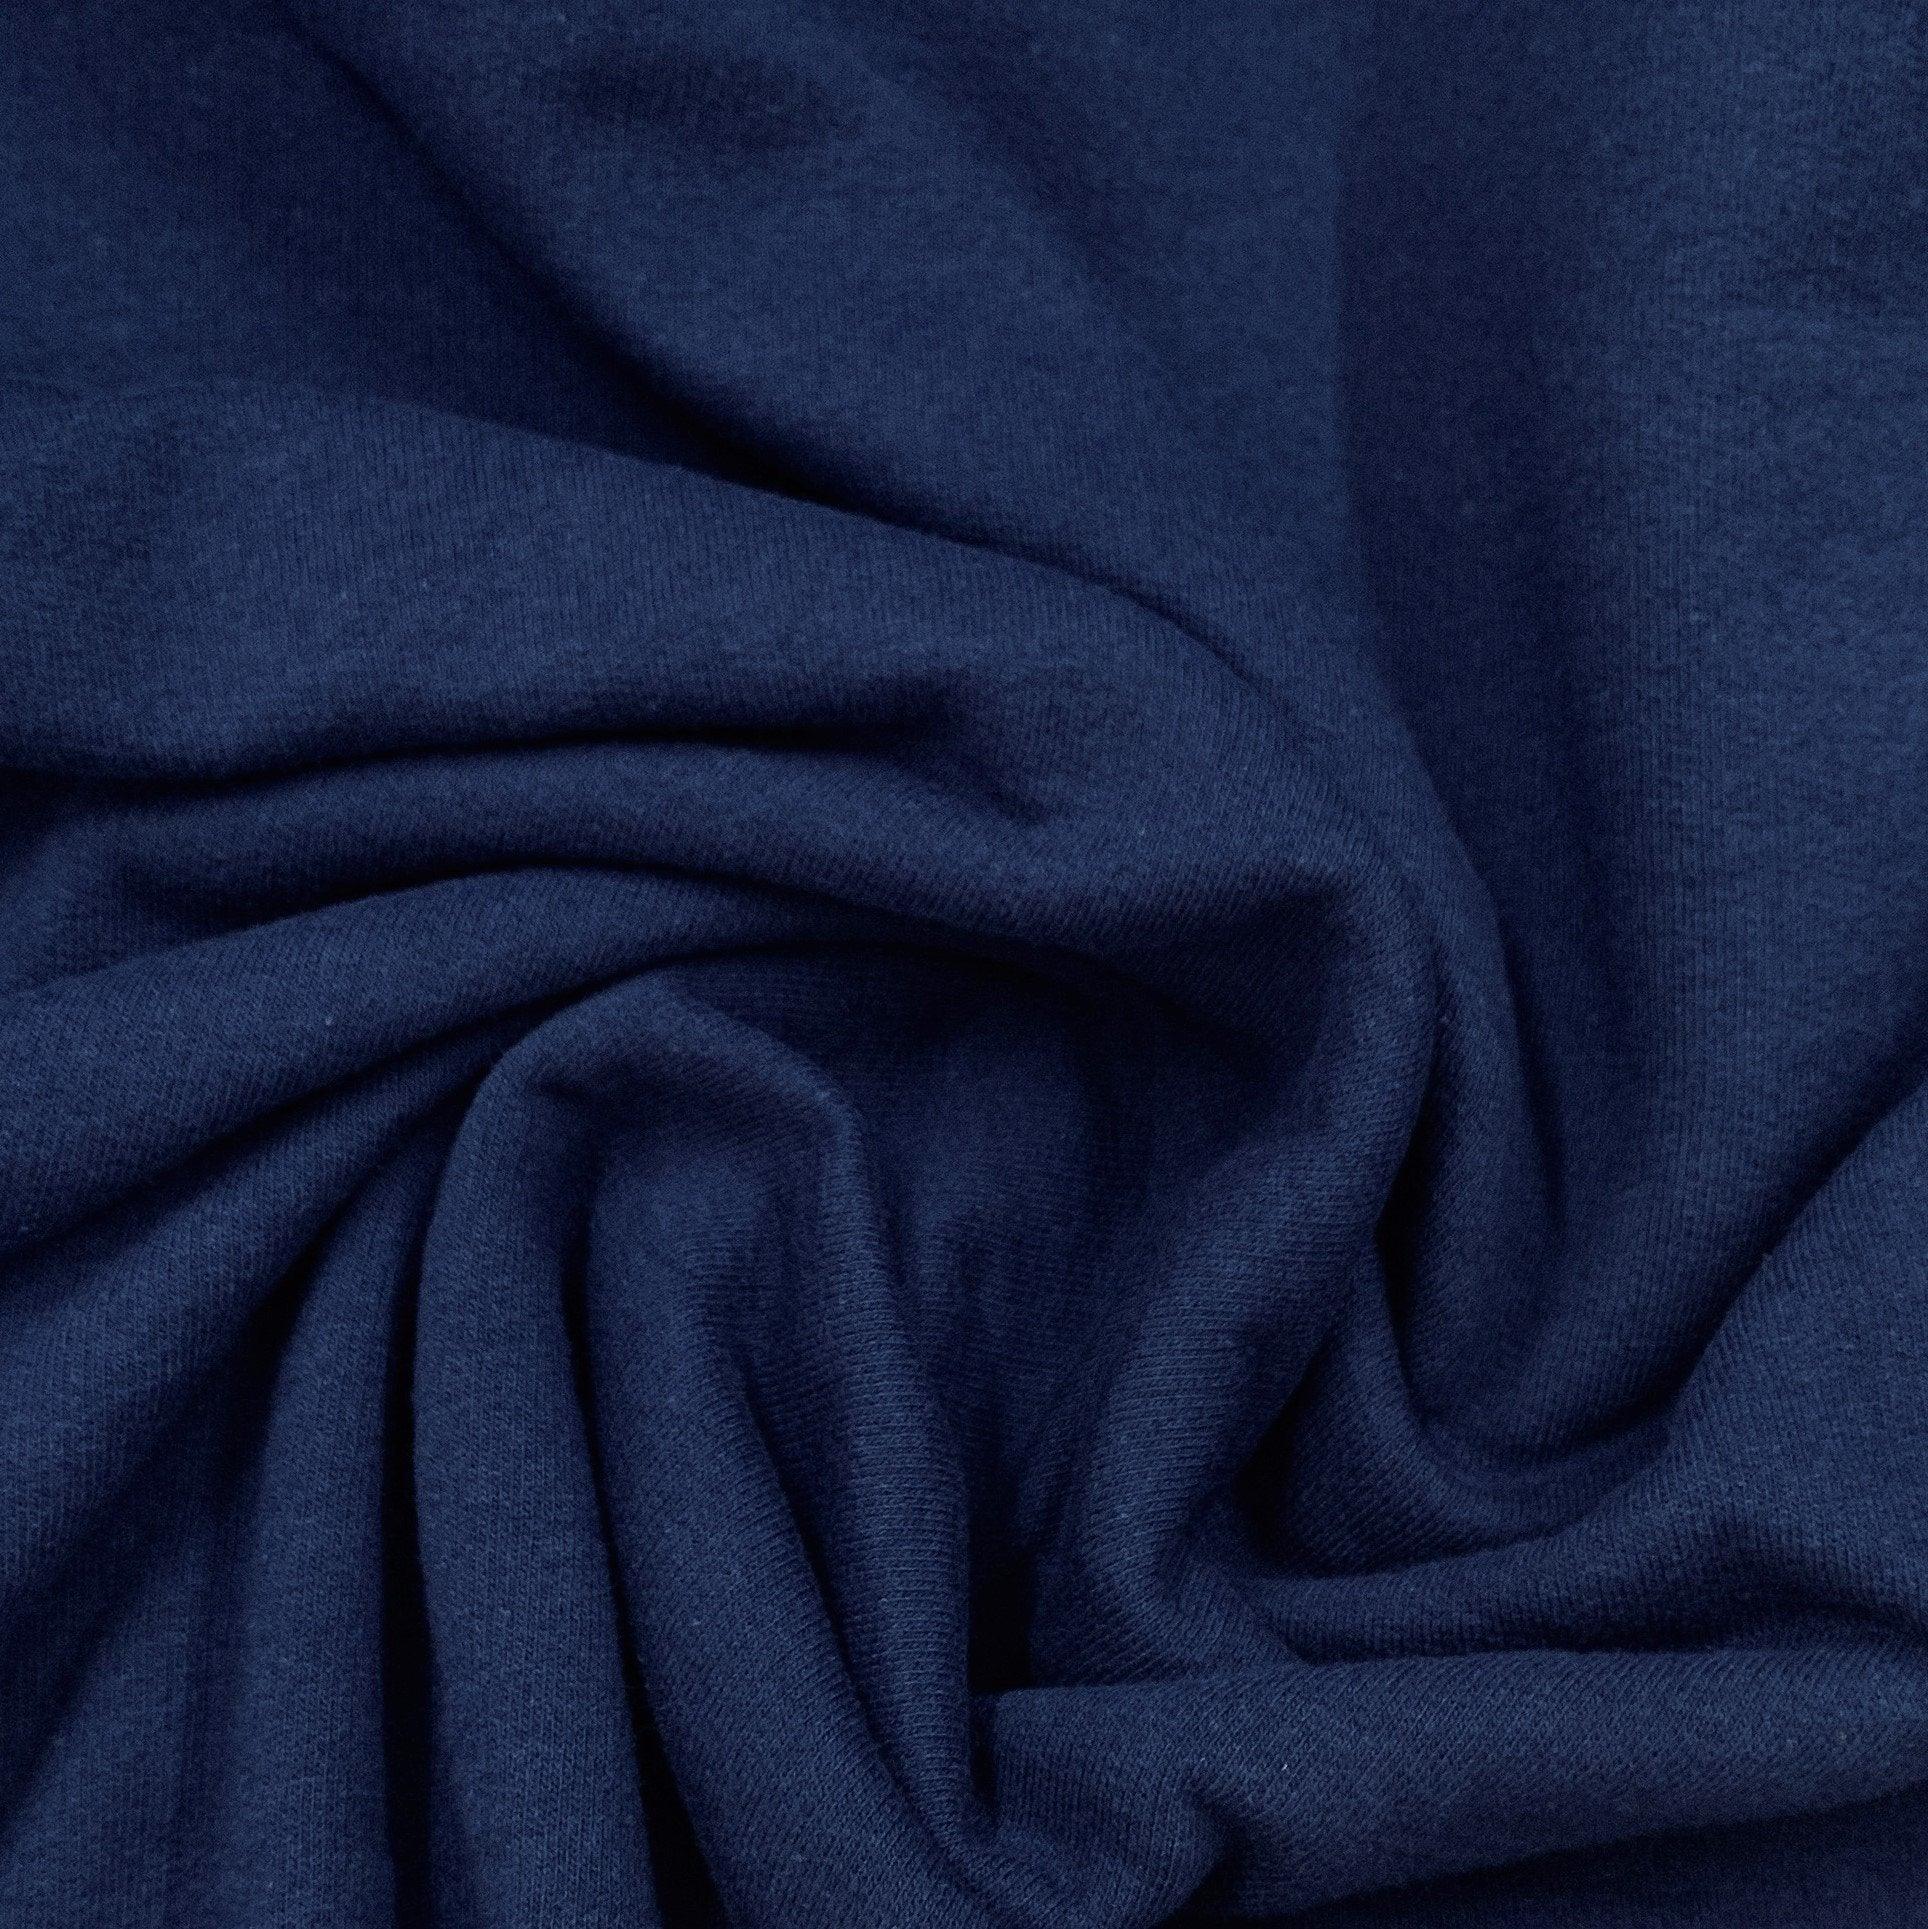 Fleet Blue Organic Cotton Fleece Fabric - 240 GSM - Grown in the USA